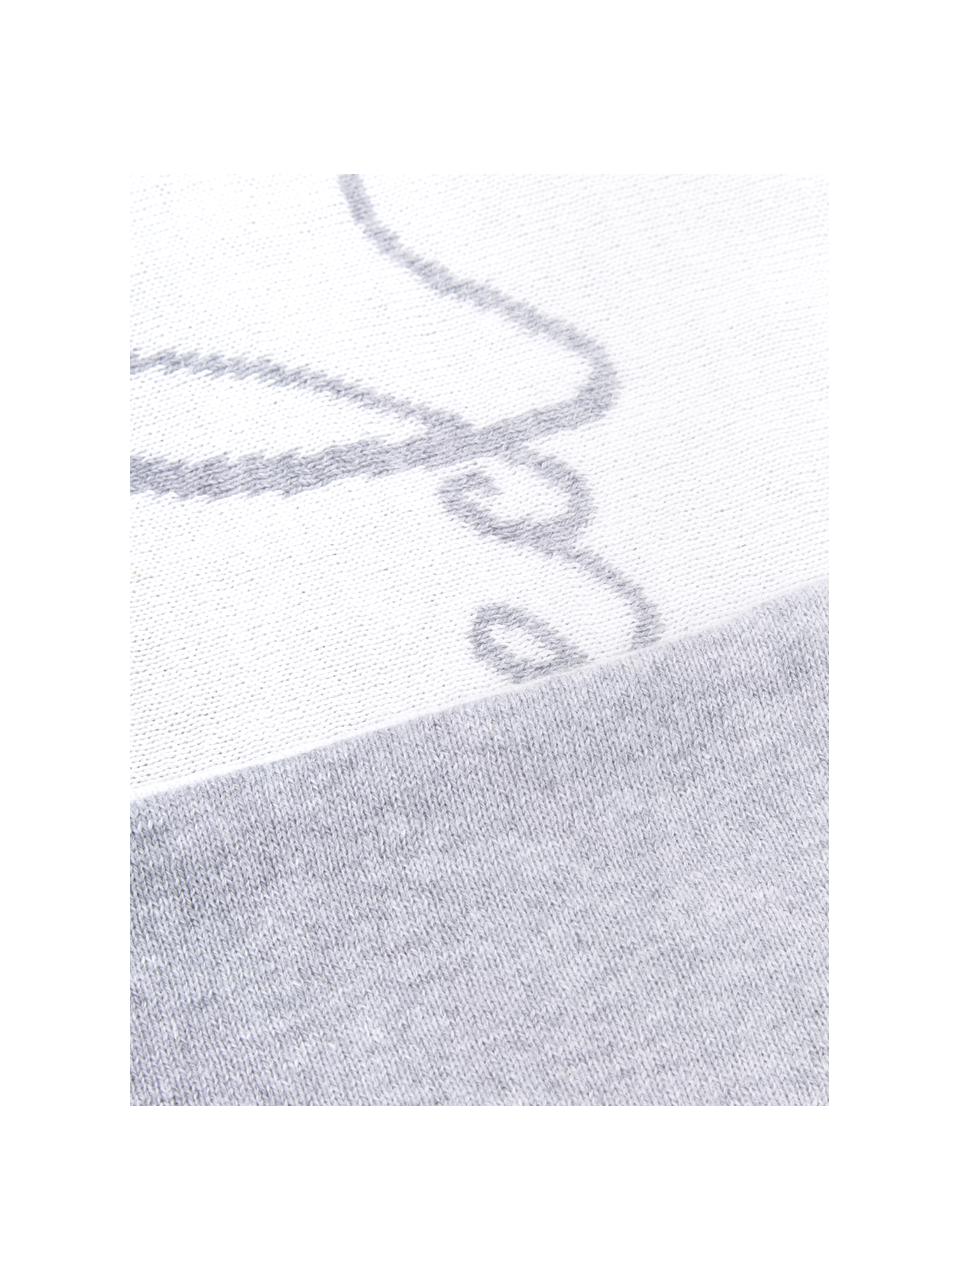 Fijn gebreide dubbelzijdige kussenhoes Besina met opschrift, 100% katoen, Lichtgrijs, crèmewit, 30 x 50 cm